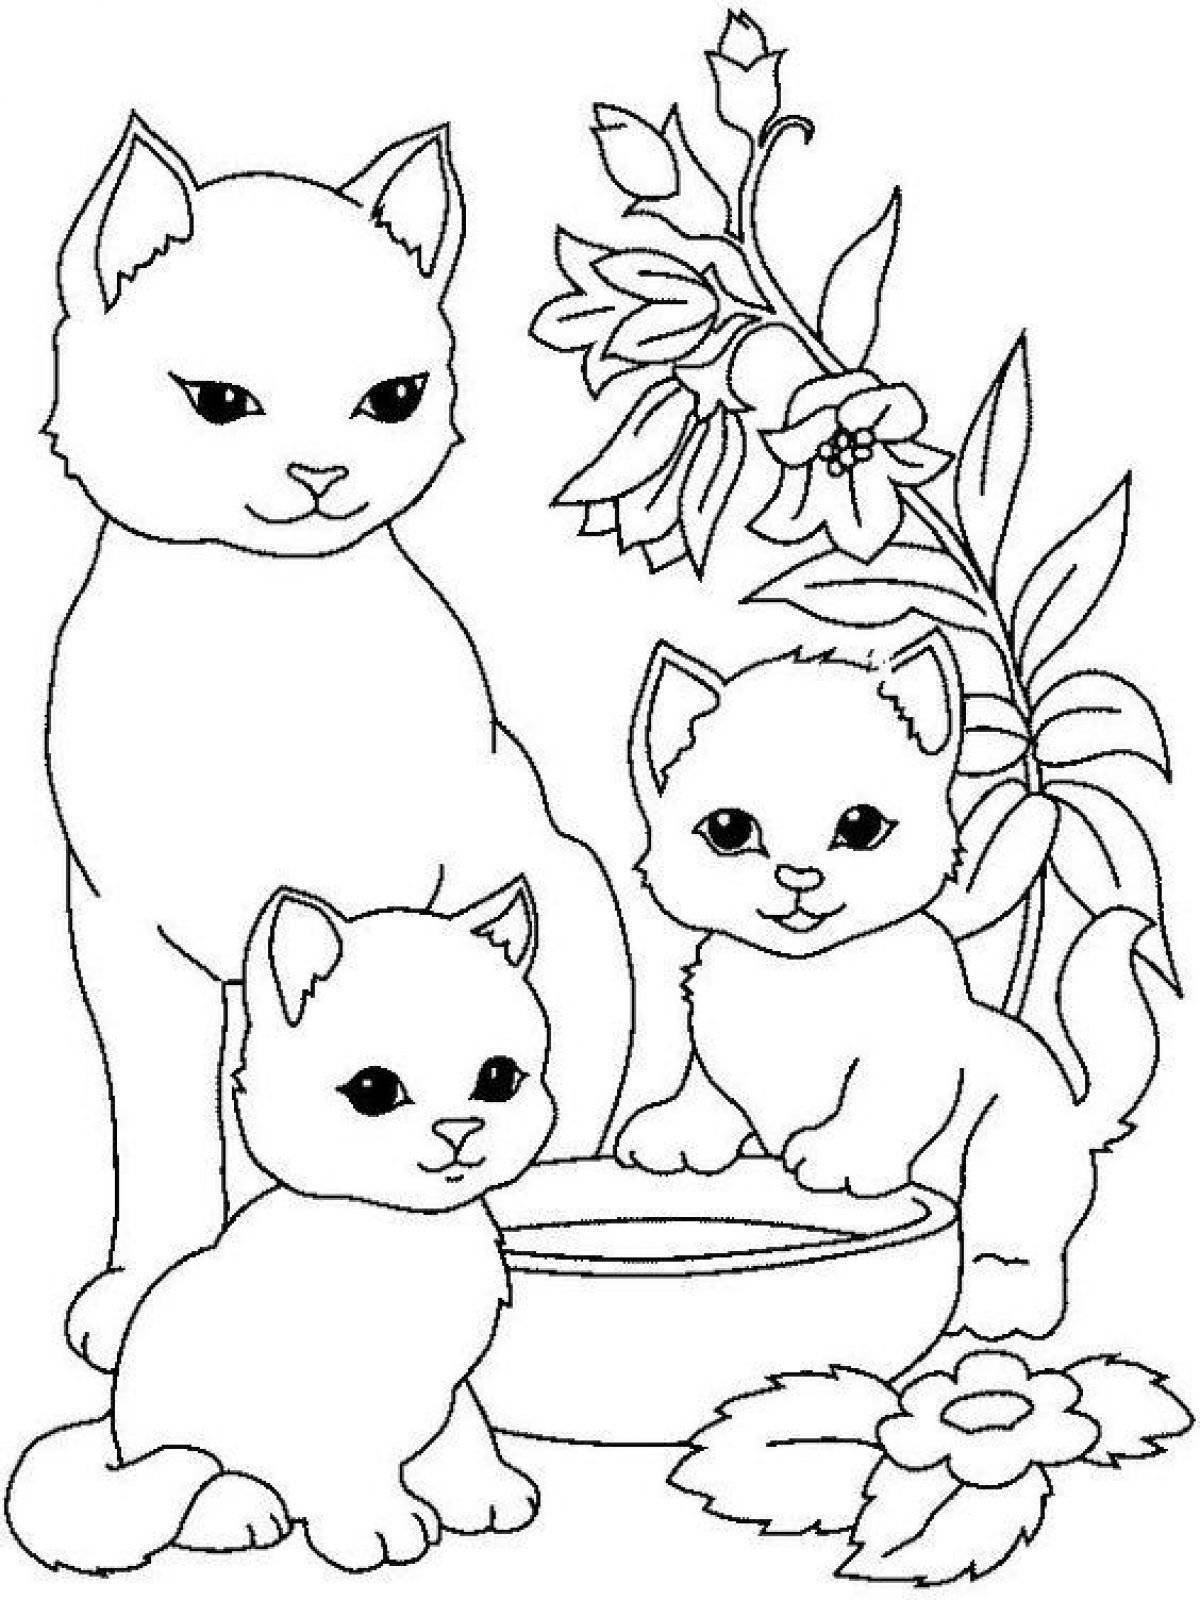 Little cats #5